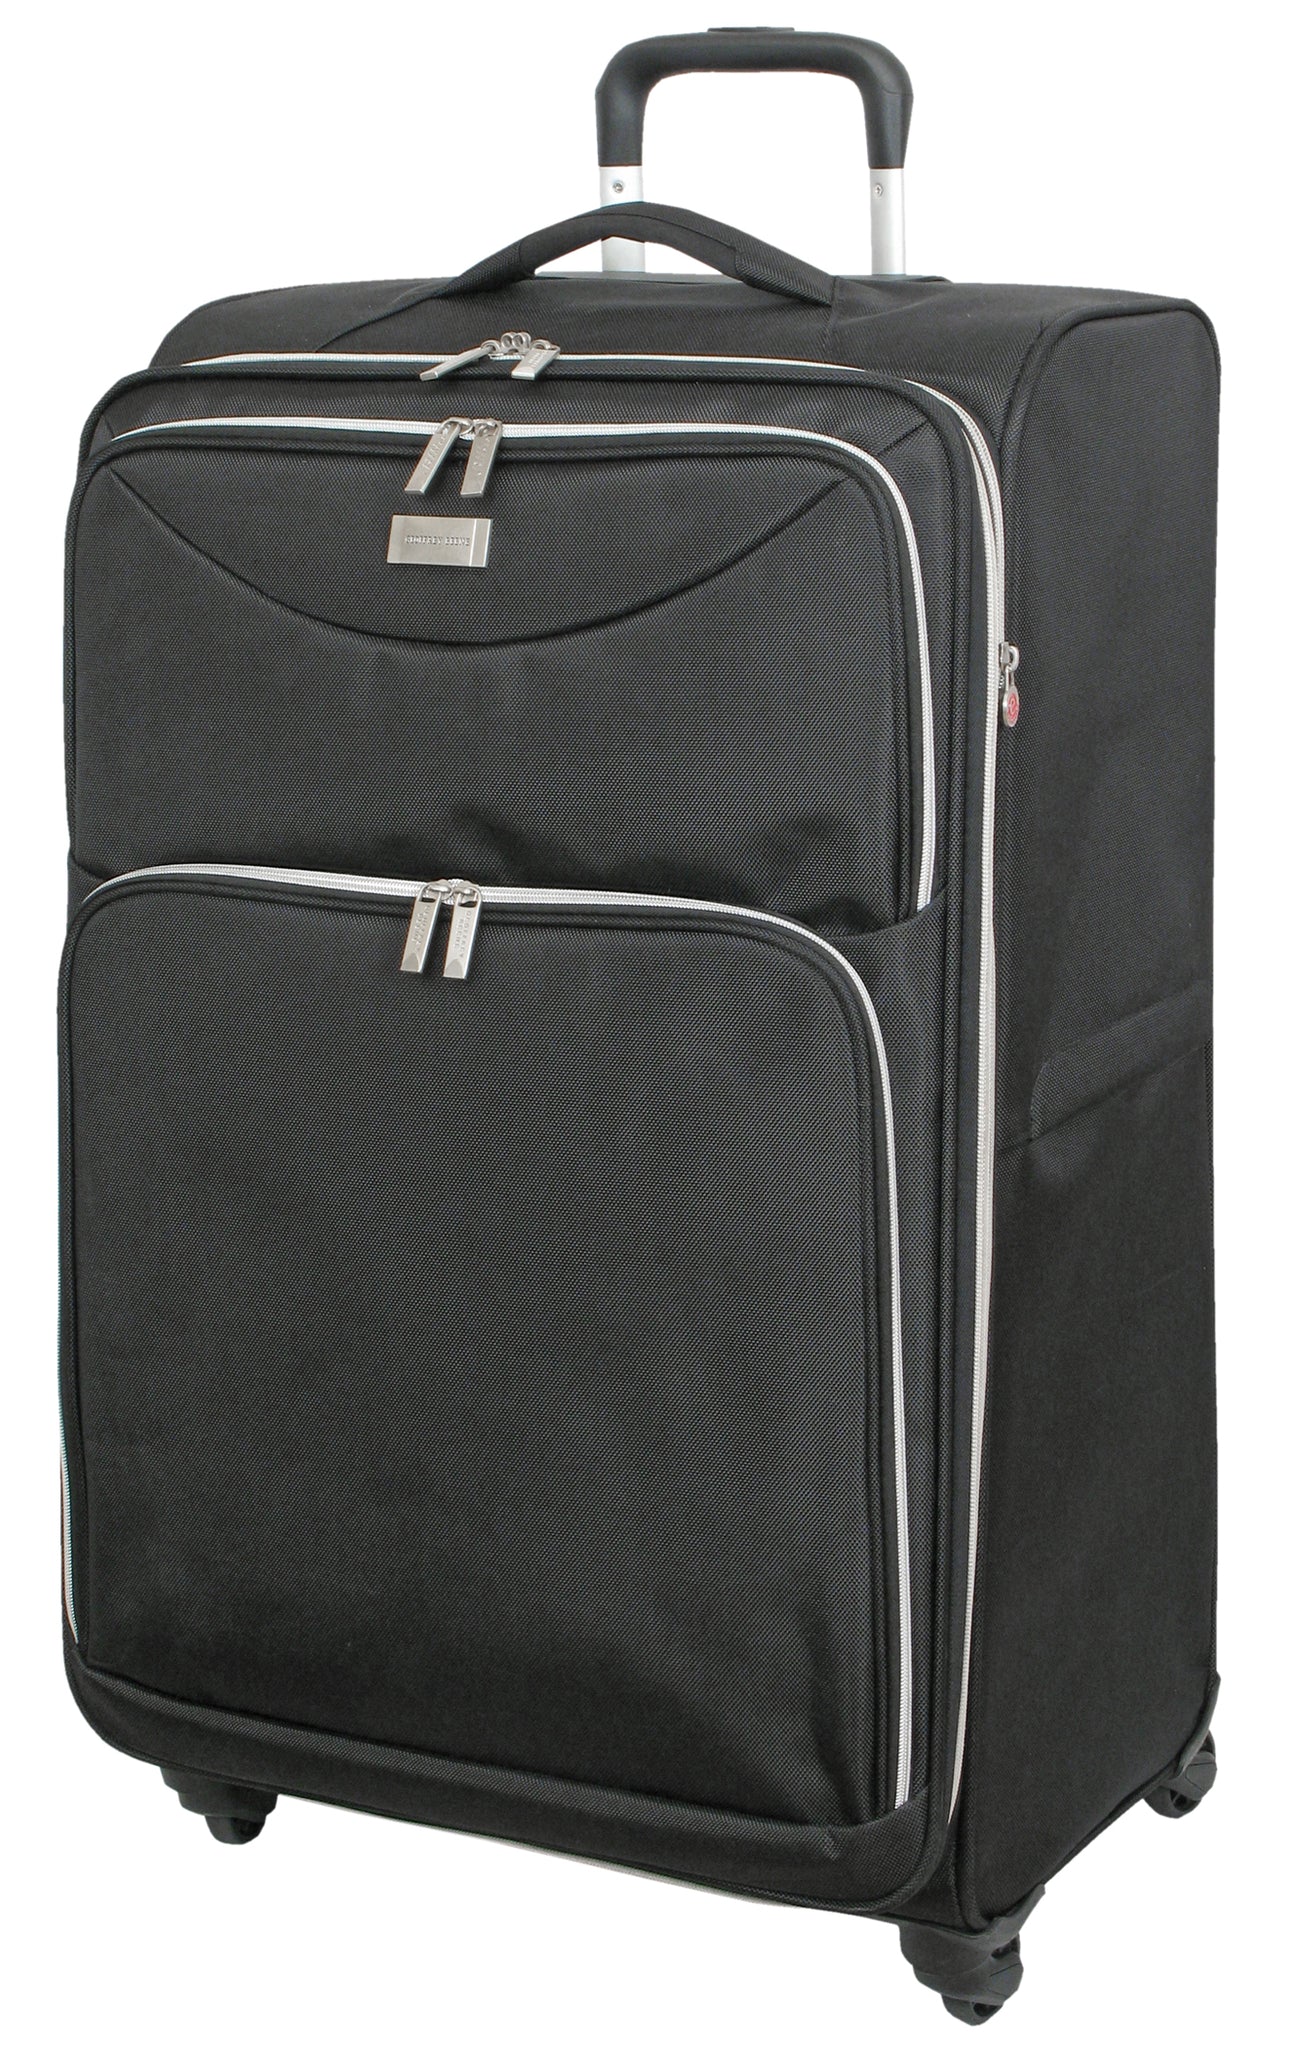 Geoffrey Beene Ultra Light-Weight Midnight Collection 3 Pc Luggage Set, Black - GeoffreyBeene